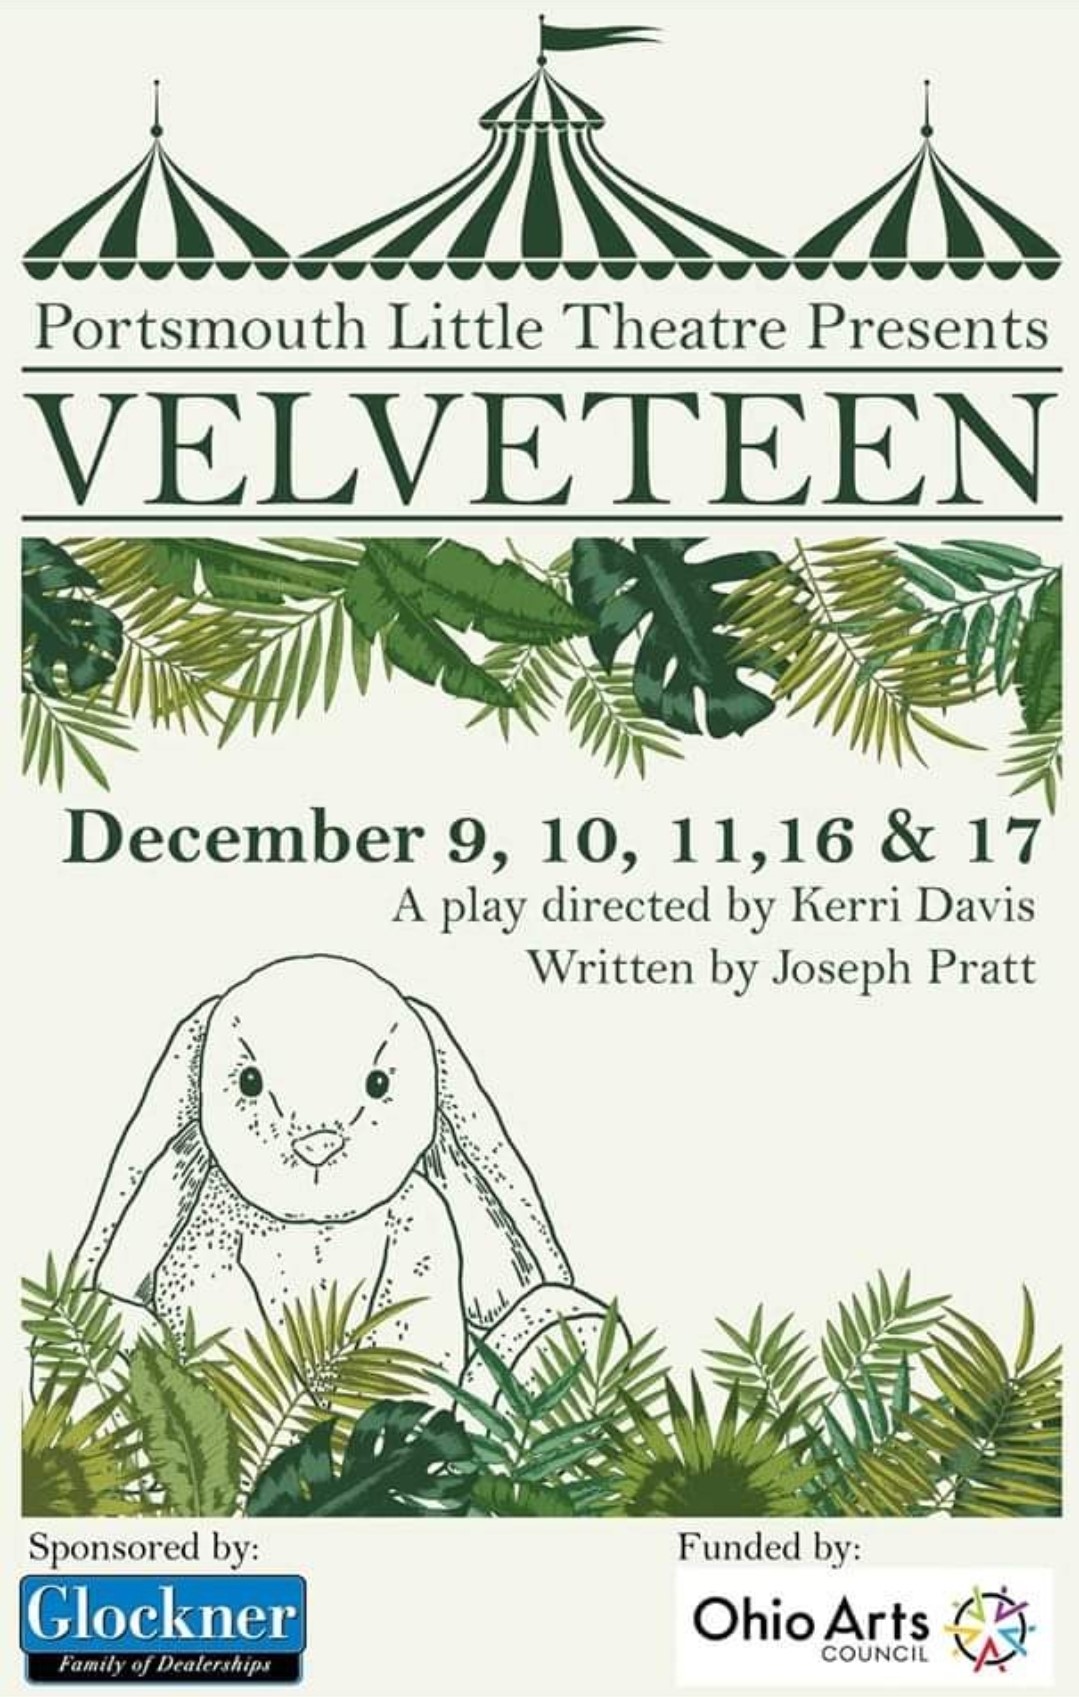 Velveteen  on Dec 11, 14:30@Portsmouth Little Theatre - Elegir asientoCompra entradas y obtén información enPortsmouth Little Theatre 